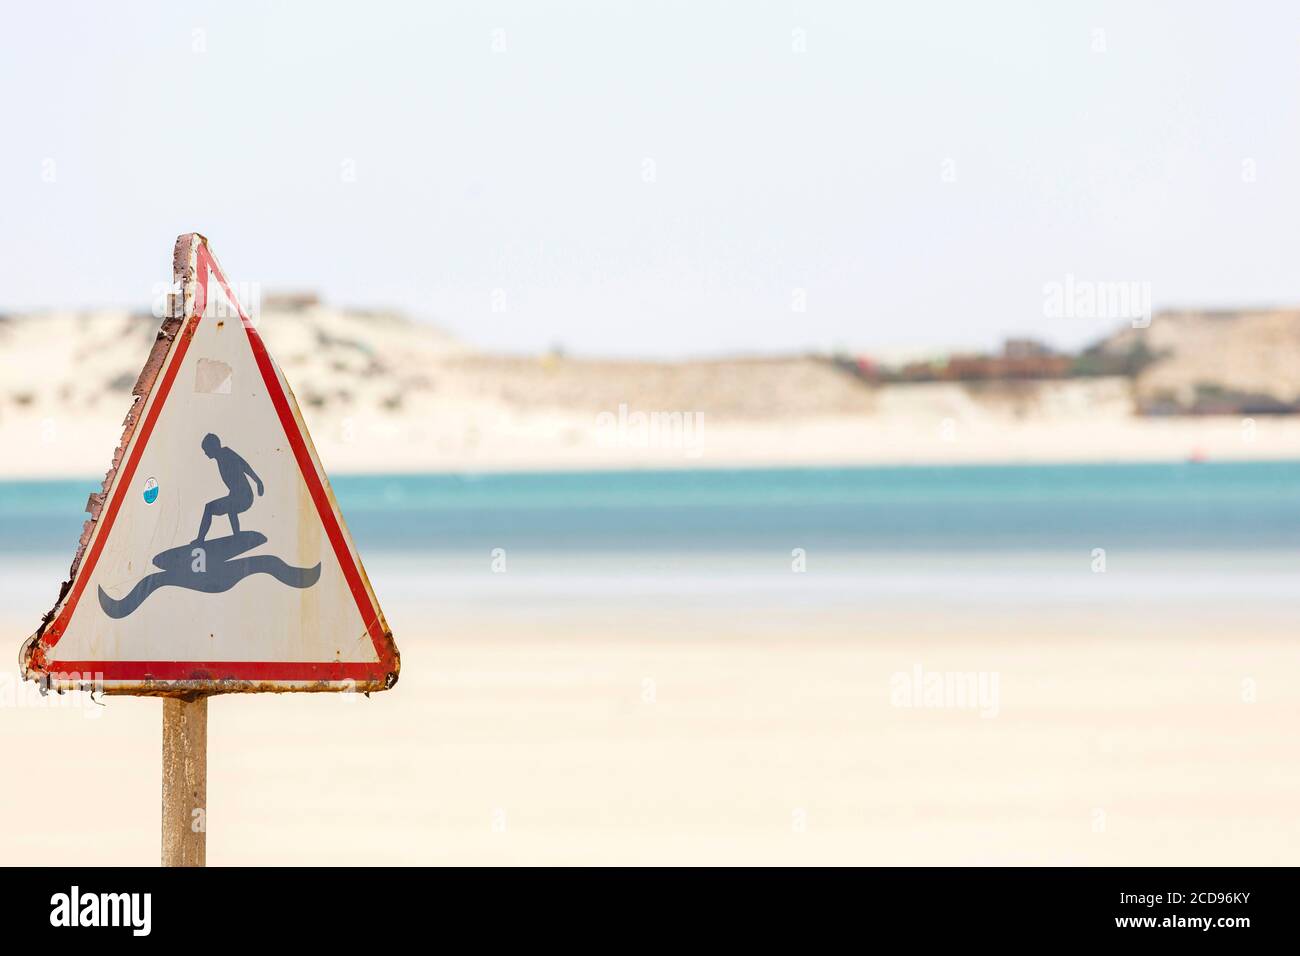 Marocco, Oued Ed-Dahab, Dakhla, señal de carretera que representa a un surfista en una ola Foto de stock